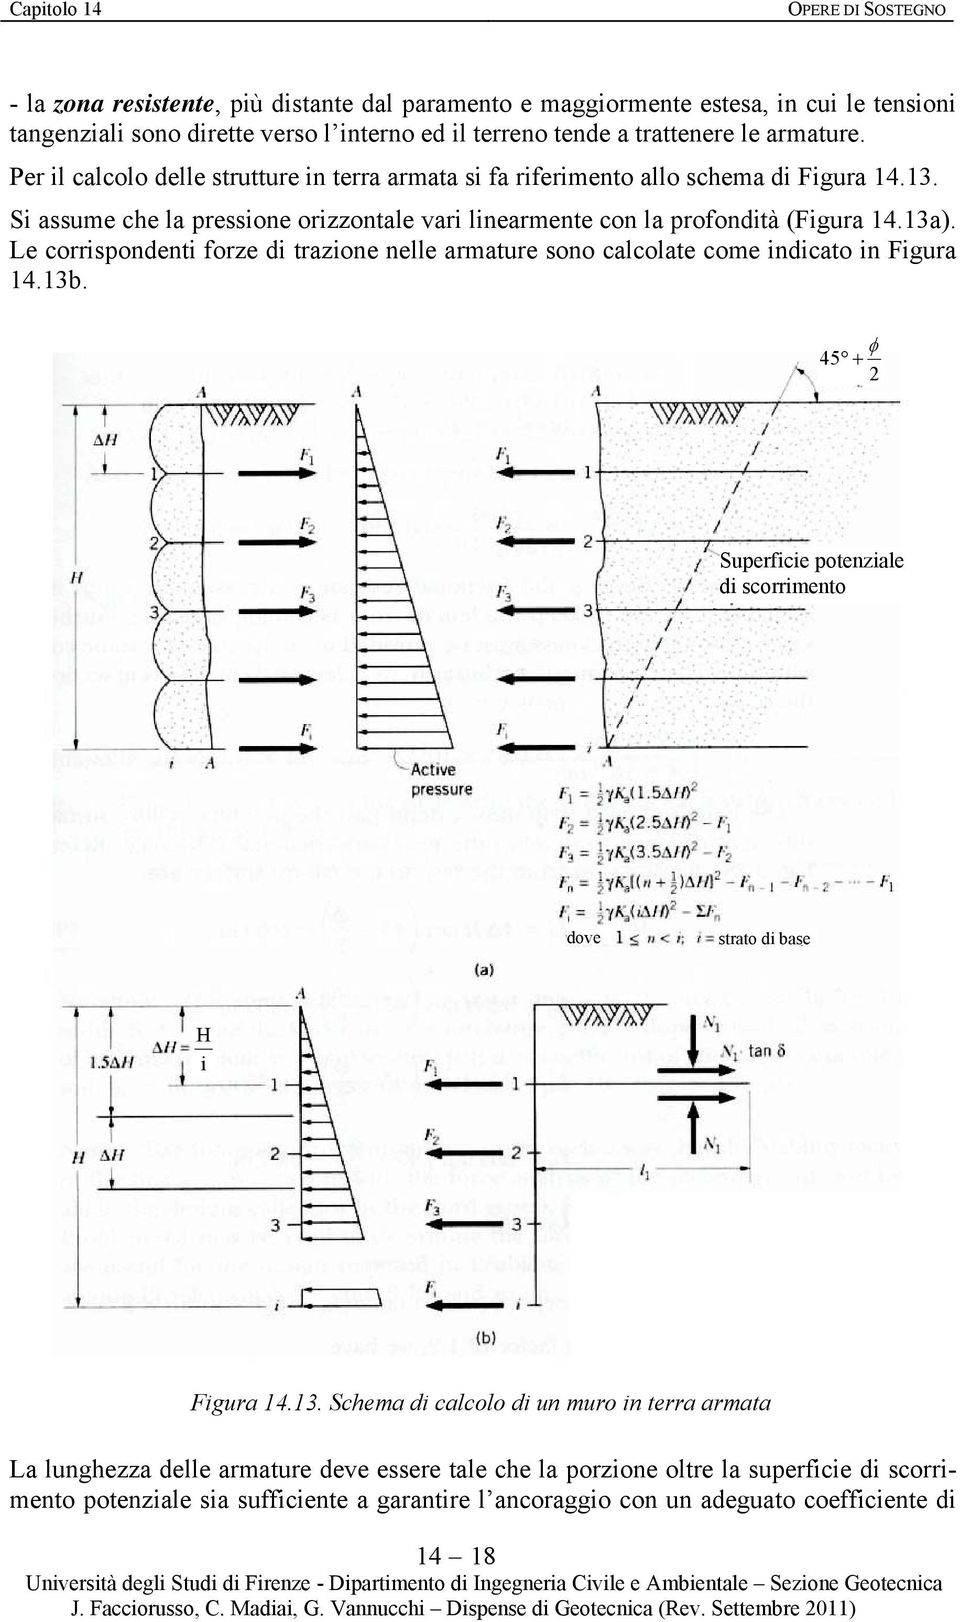 Le corrispondenti forze di trazione nelle armature sono calcolate come indicato in Figura 14.13b